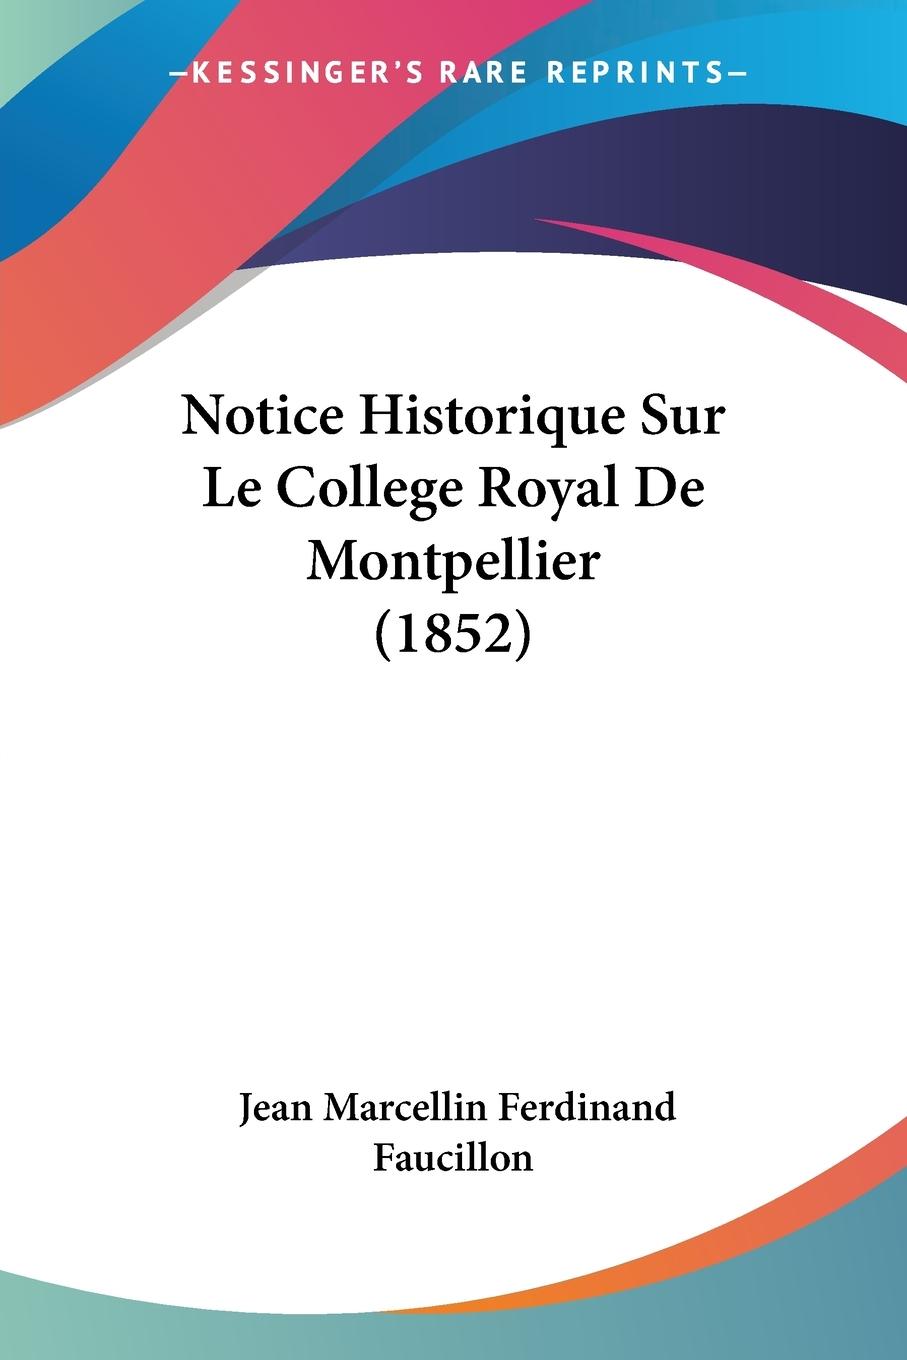 Notice Historique Sur Le College Royal De Montpellier (1852) - Faucillon, Jean Marcellin Ferdinand